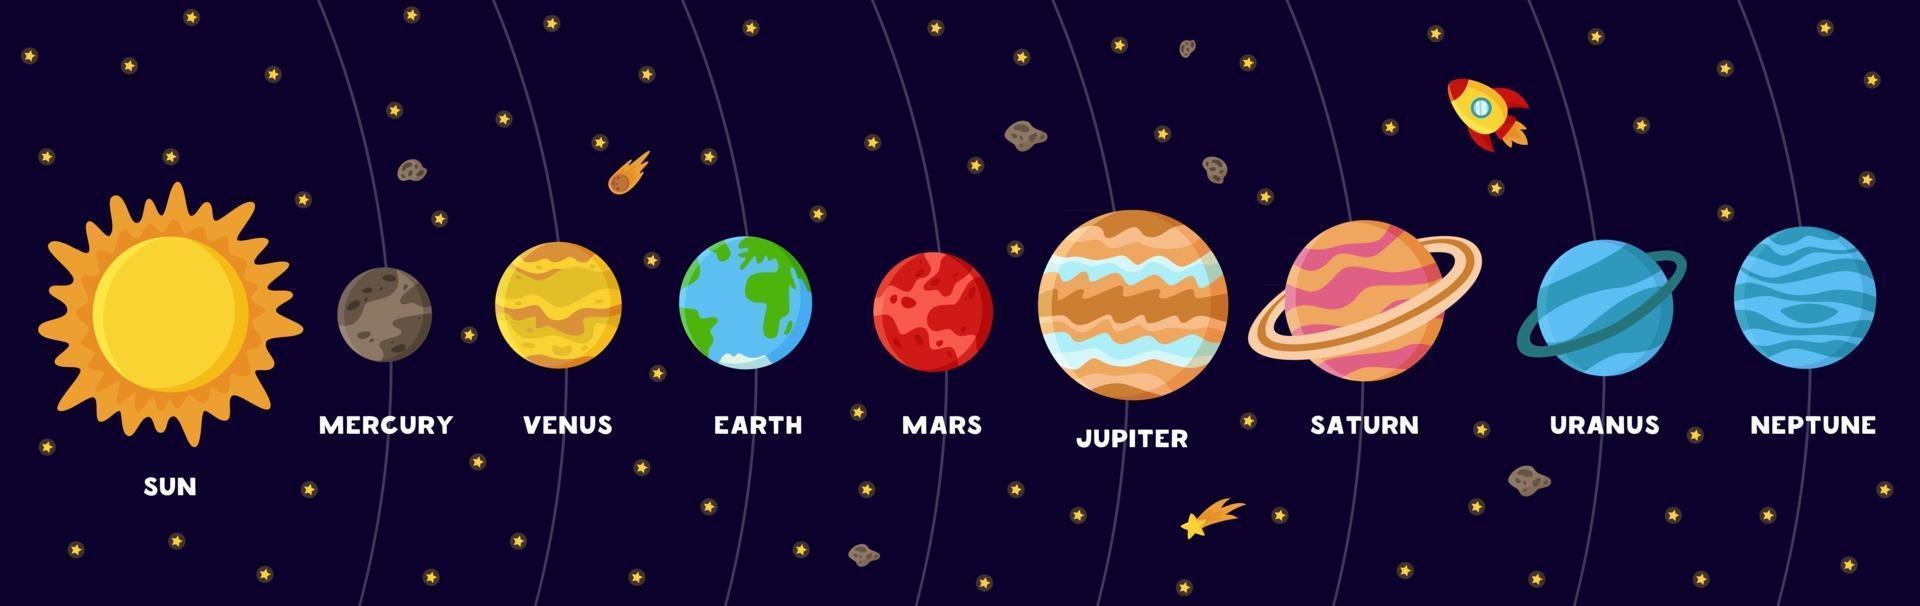 cartaz colorido com planetas do sistema solar. esquema do sistema solar vetor